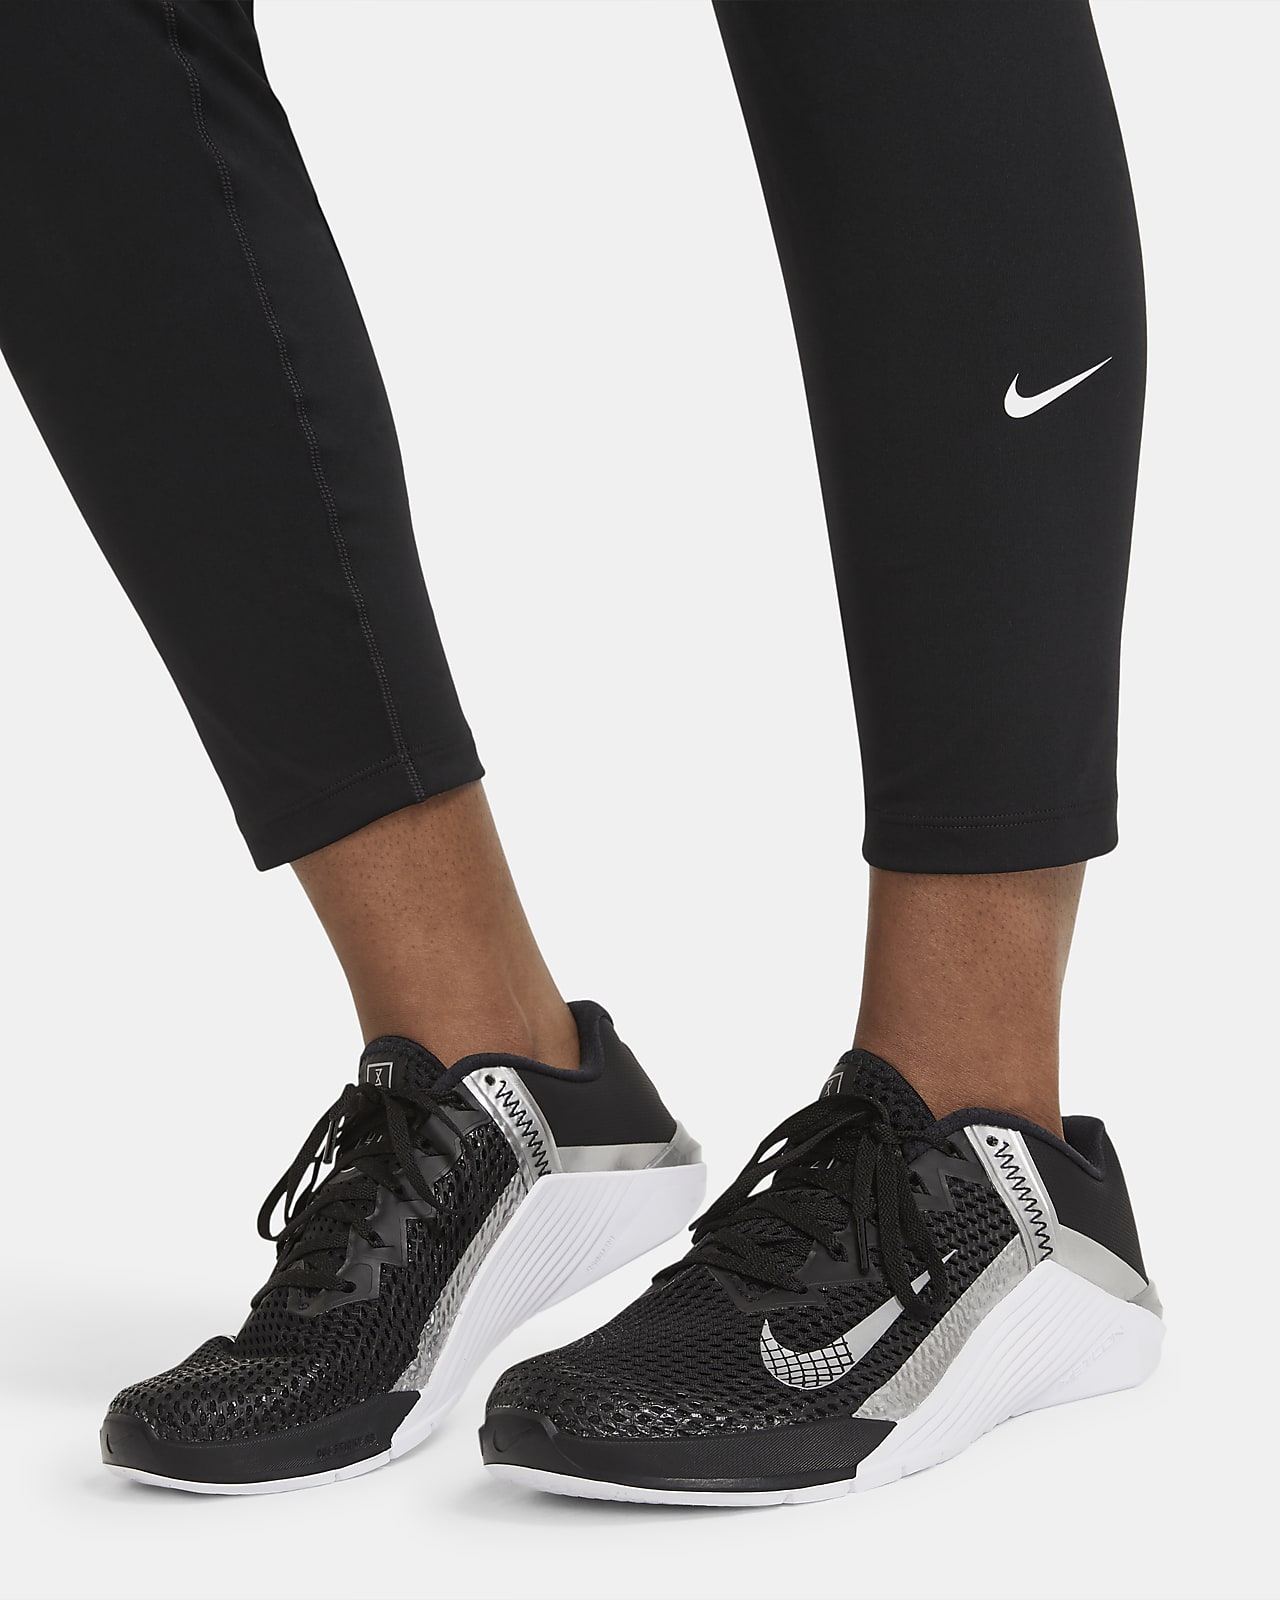 Nike One Leggings Damen - schwarz/weiß DD0245-010